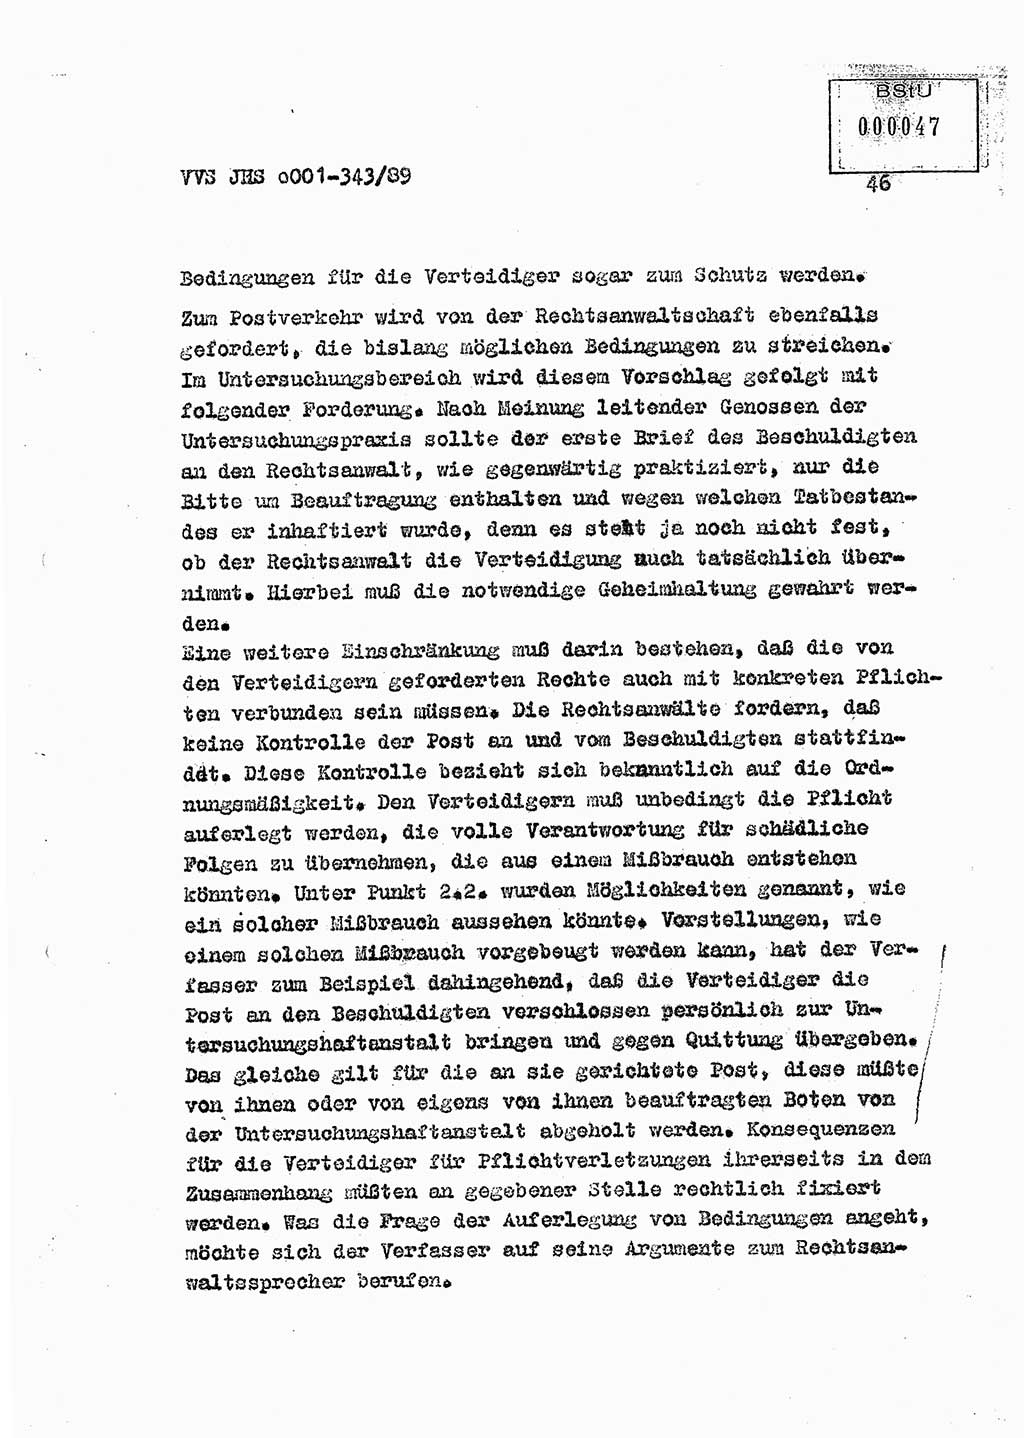 Diplomarbeit Offiziersschüler Axel Henschke (HA Ⅸ/9), Ministerium für Staatssicherheit (MfS) [Deutsche Demokratische Republik (DDR)], Juristische Hochschule (JHS), Vertrauliche Verschlußsache (VVS) o001-343/89, Potsdam 1989, Seite 46 (Dipl.-Arb. MfS DDR JHS VVS o001-343/89 1989, S. 46)